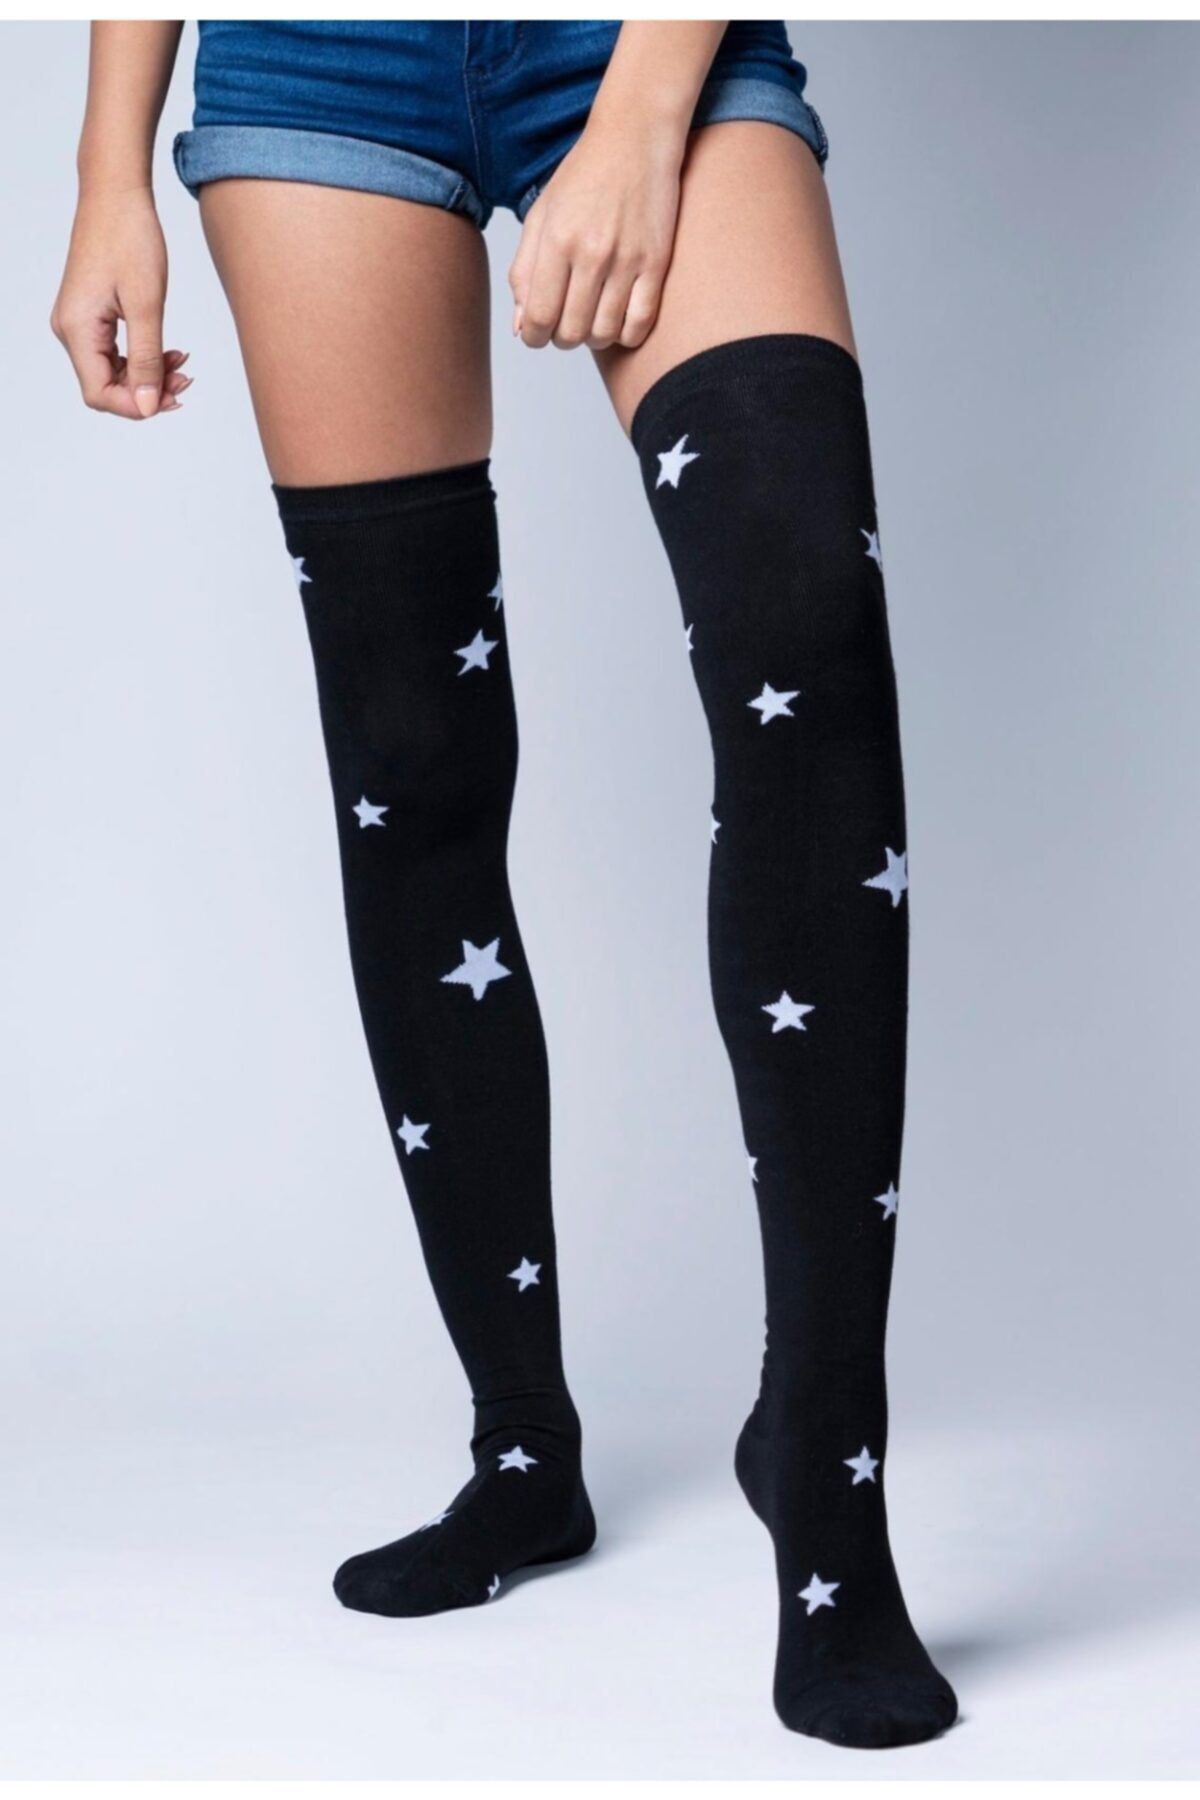 lovebox Kadın Siyah Yıldız Detaylı Pamuklu Dizüstü Çorap